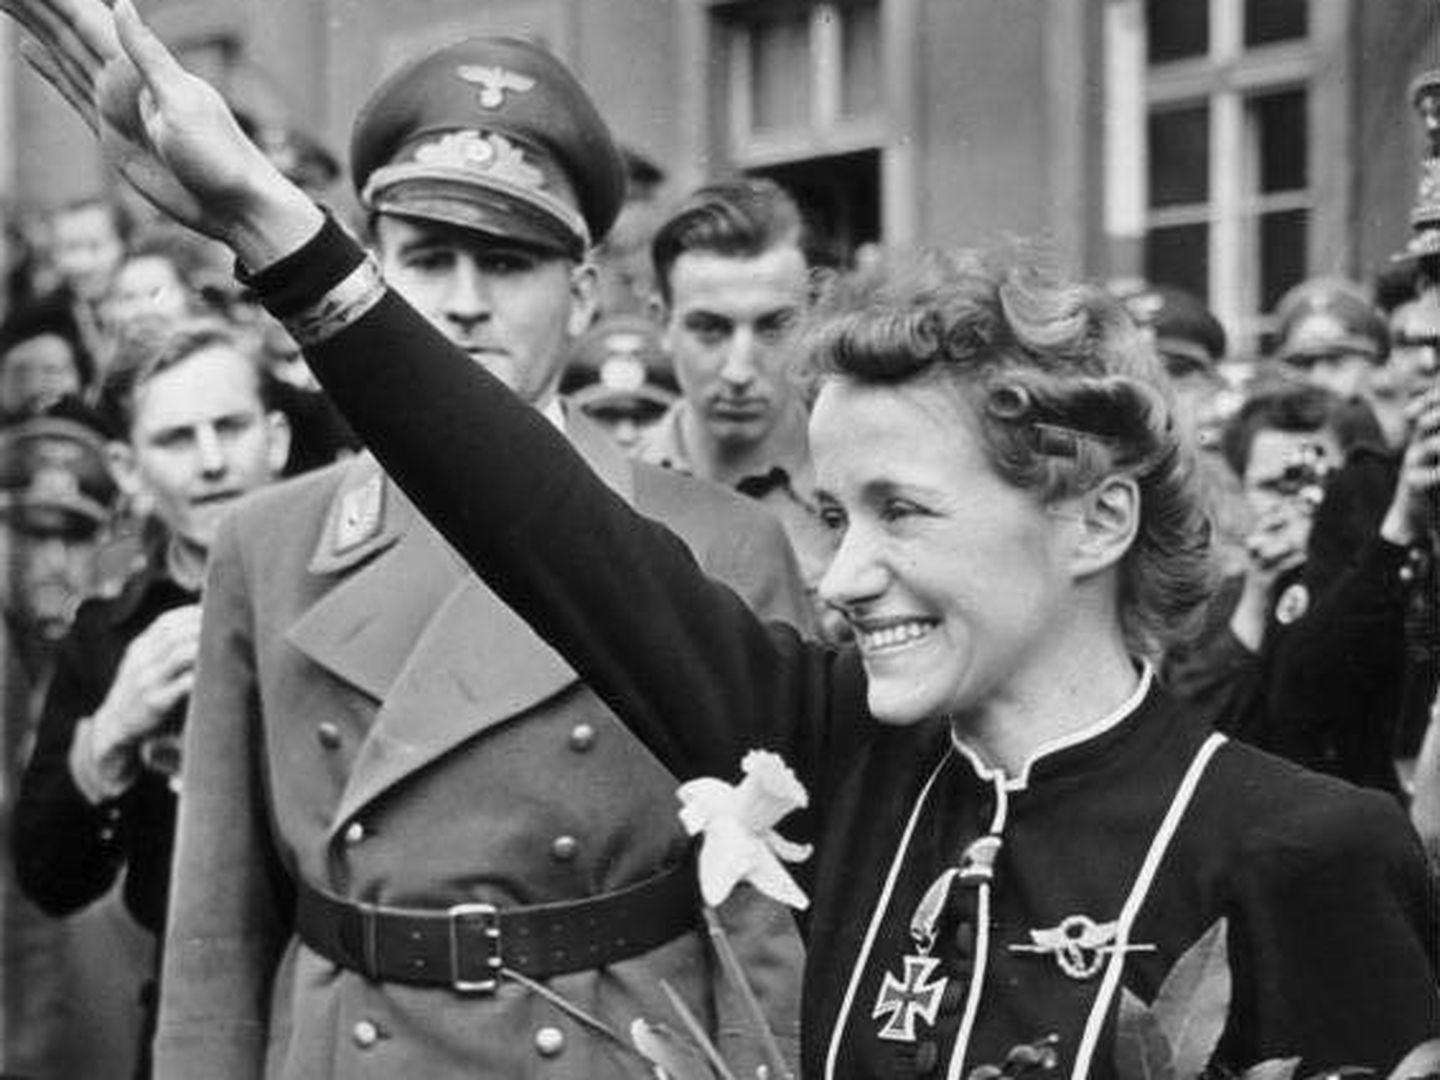 Reitsch haciendo el saludo nazi. (Bundesarchiv)